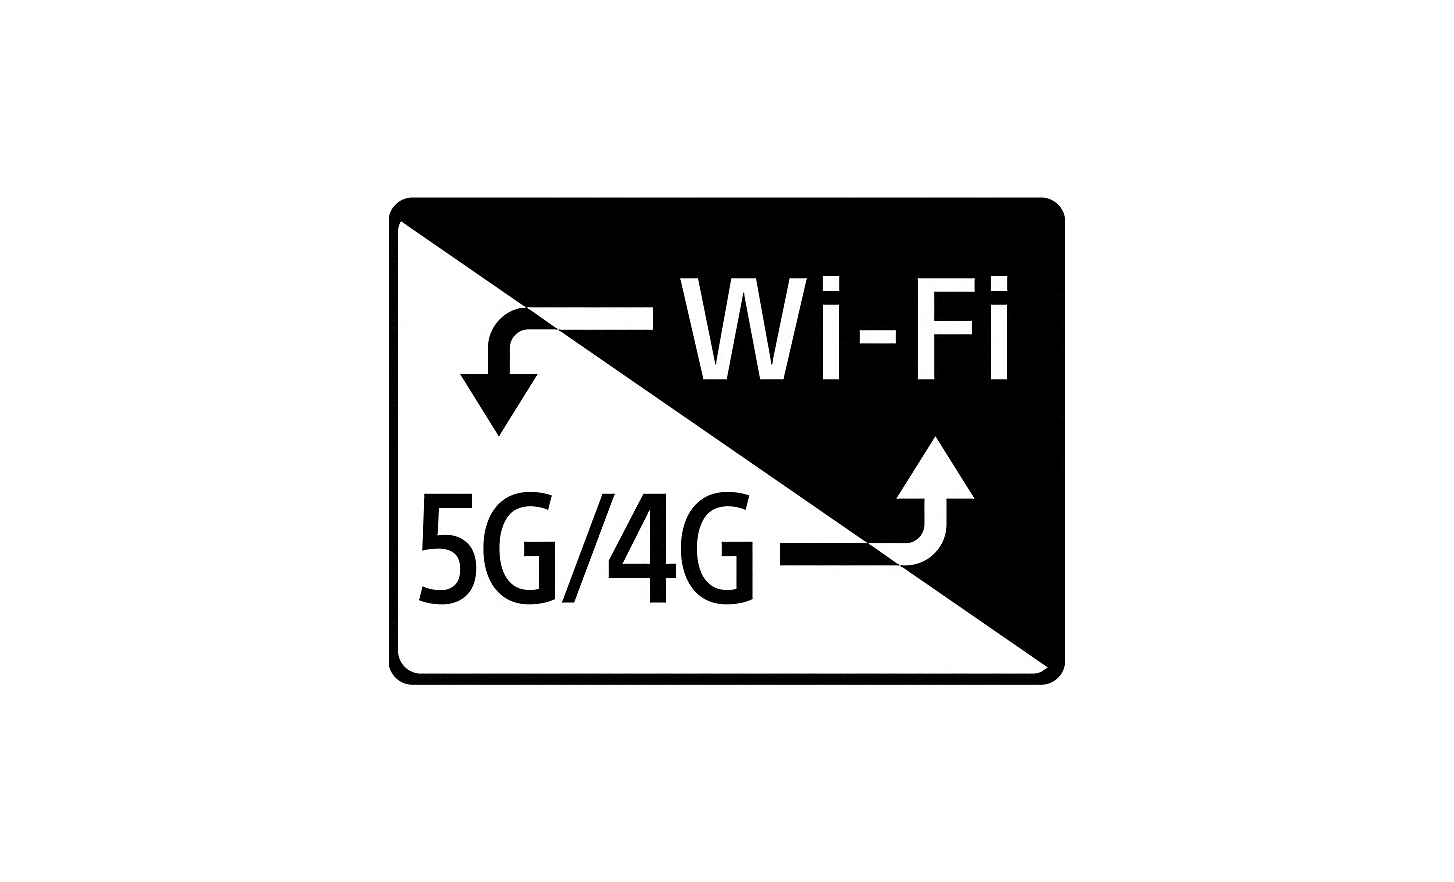 具 5G/4G 與 Wi-Fi 功能的智慧連線標誌